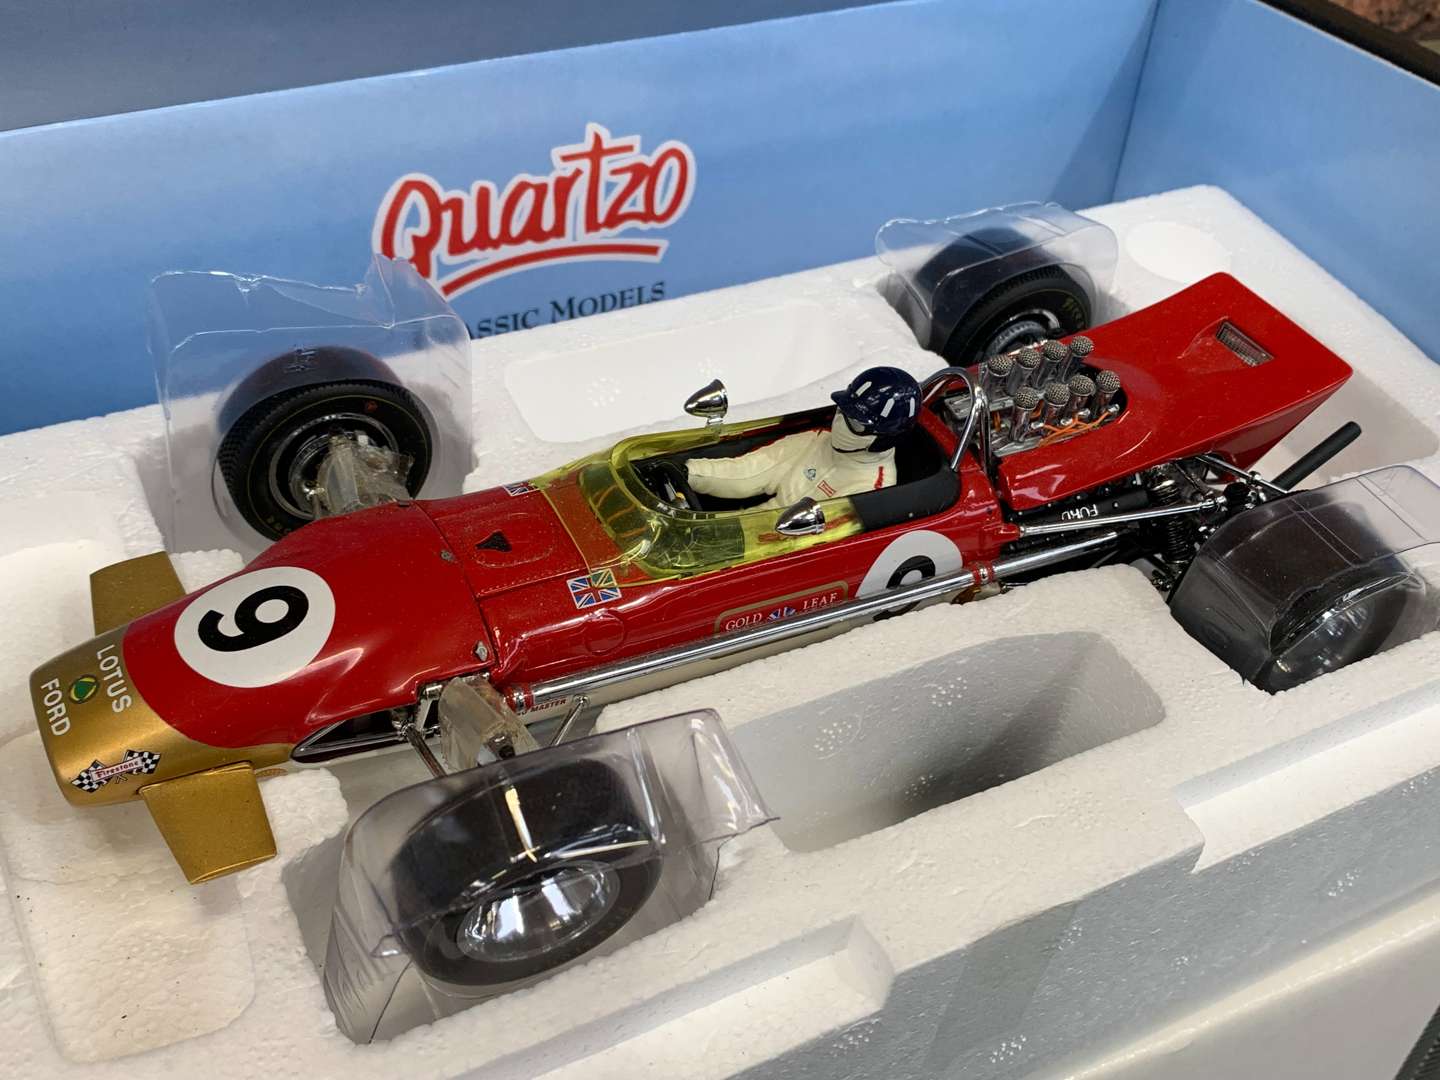 <p>Quartzo Classic Models Lotus Type 49, 1;18 Scale</p>